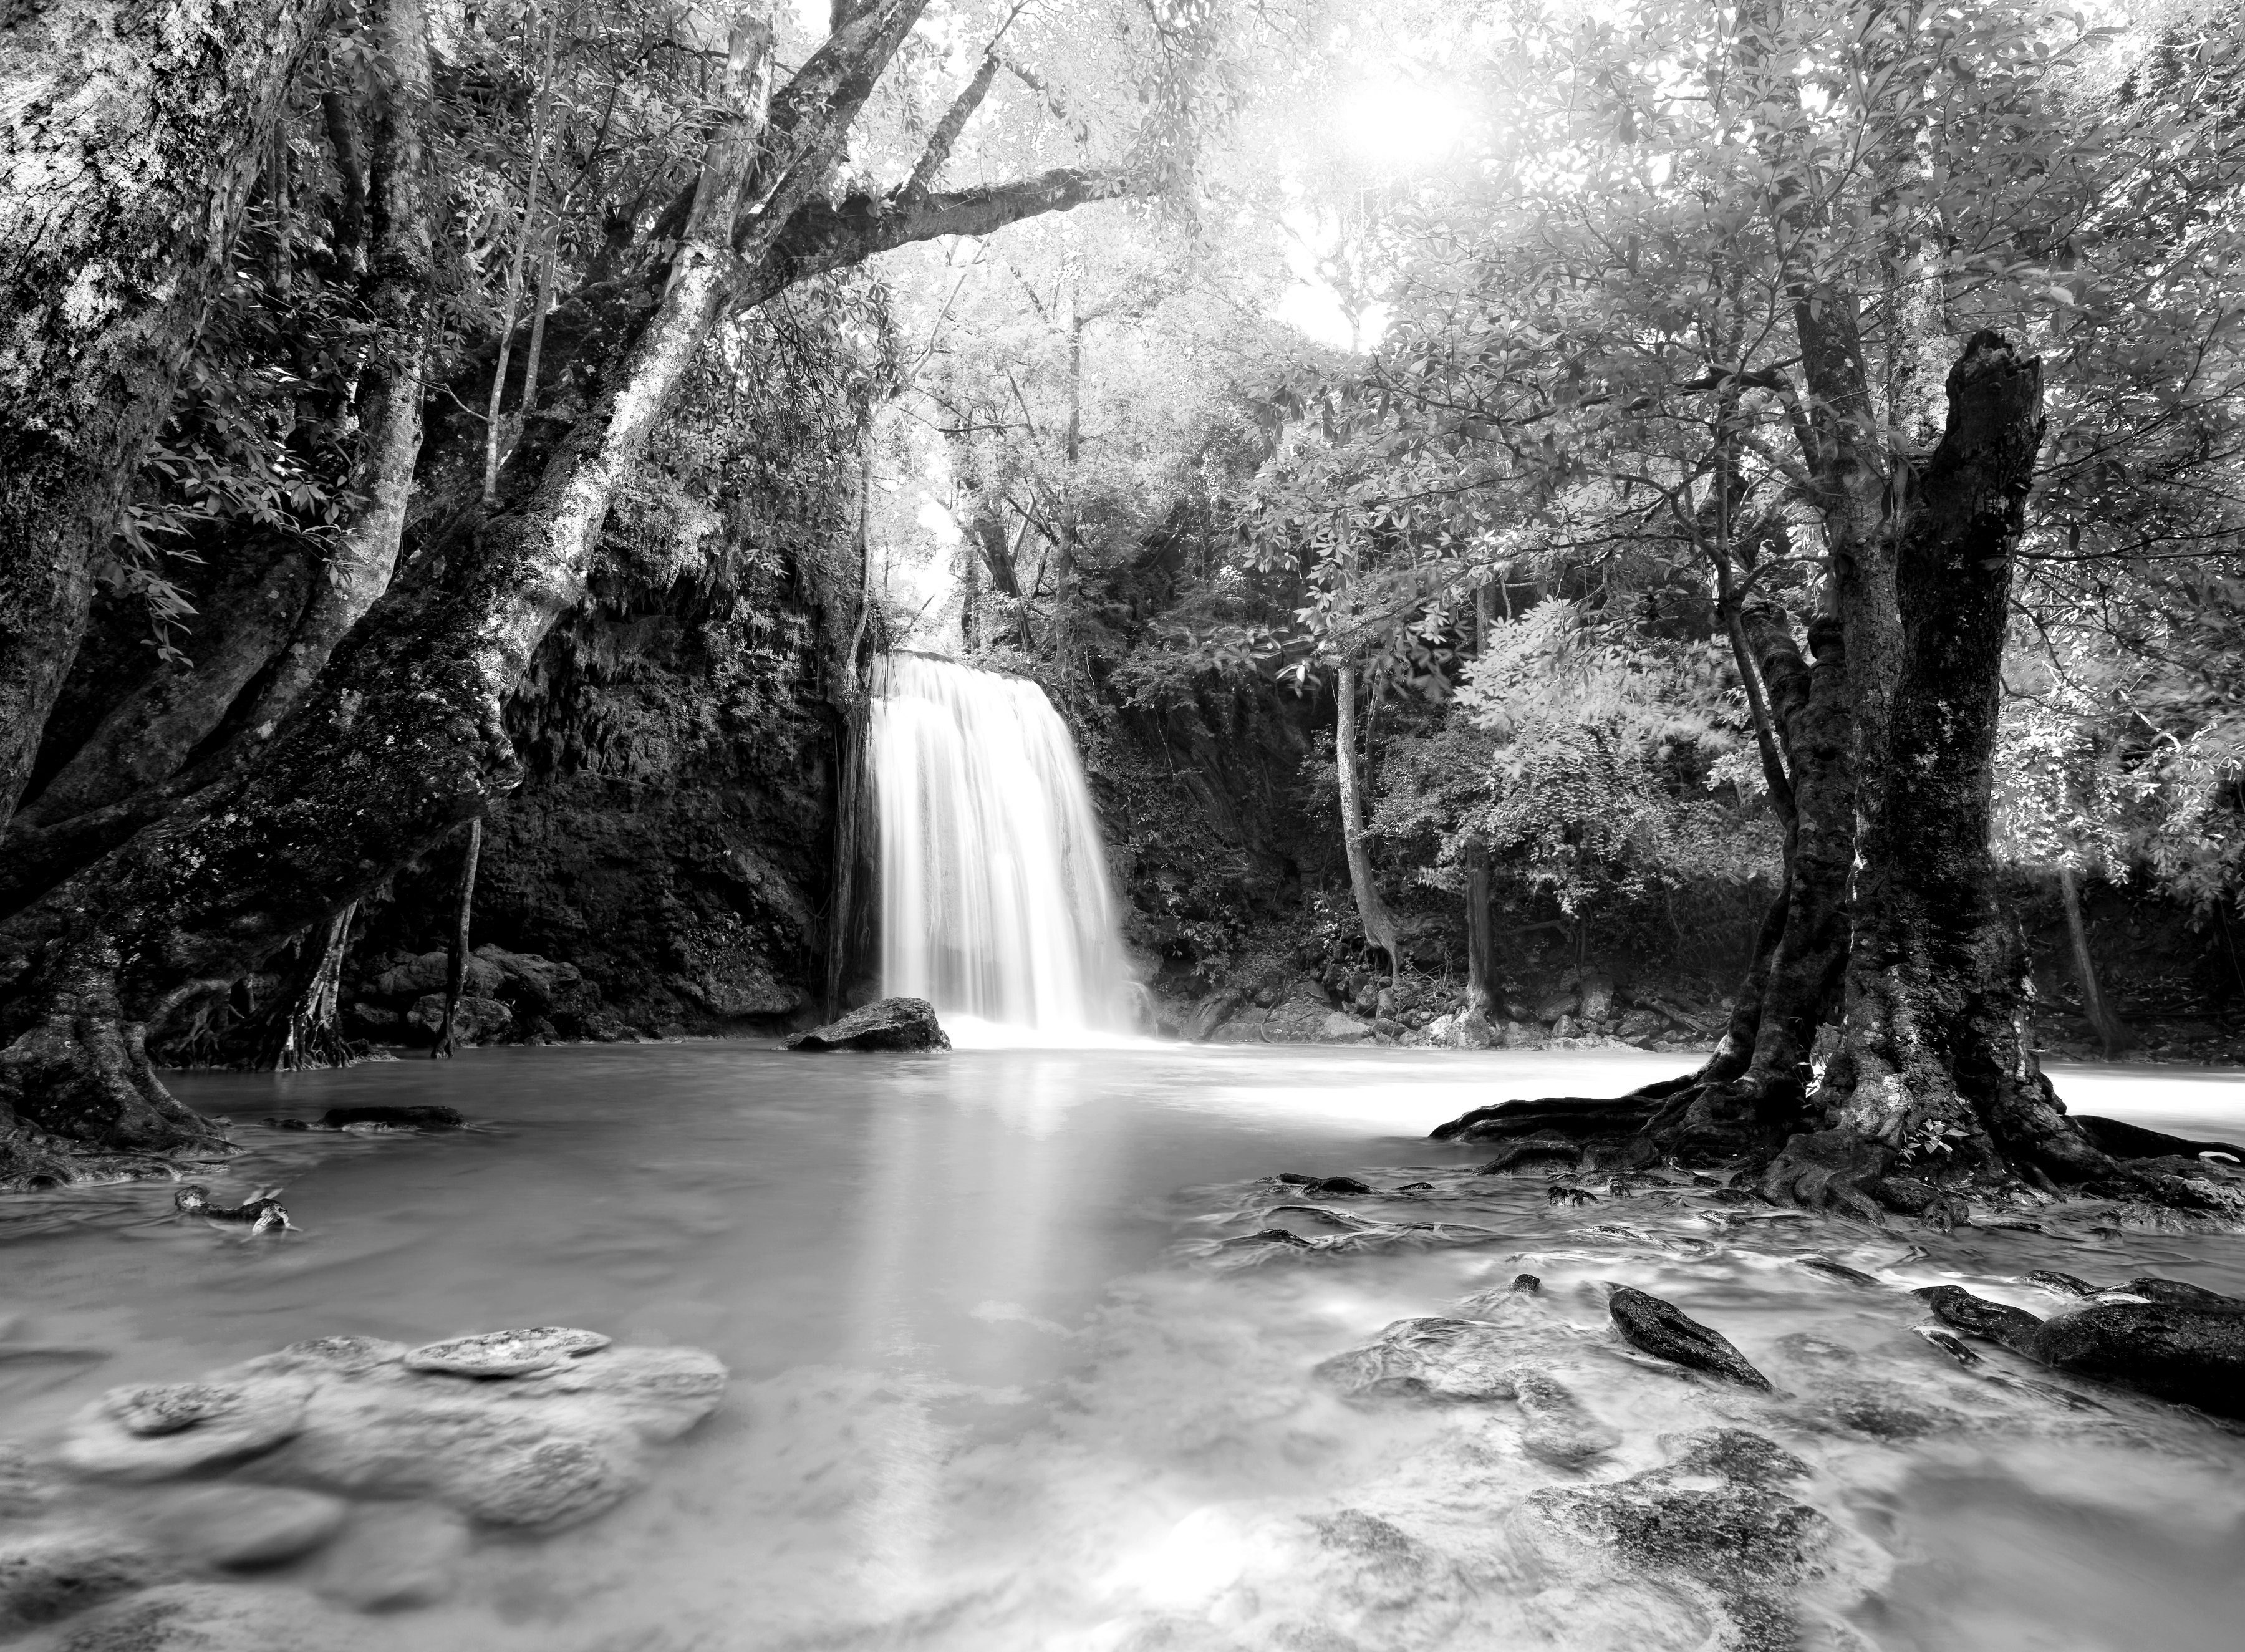 Papermoon Fototapete Wasserfall im Wald Schwarz & Weiß